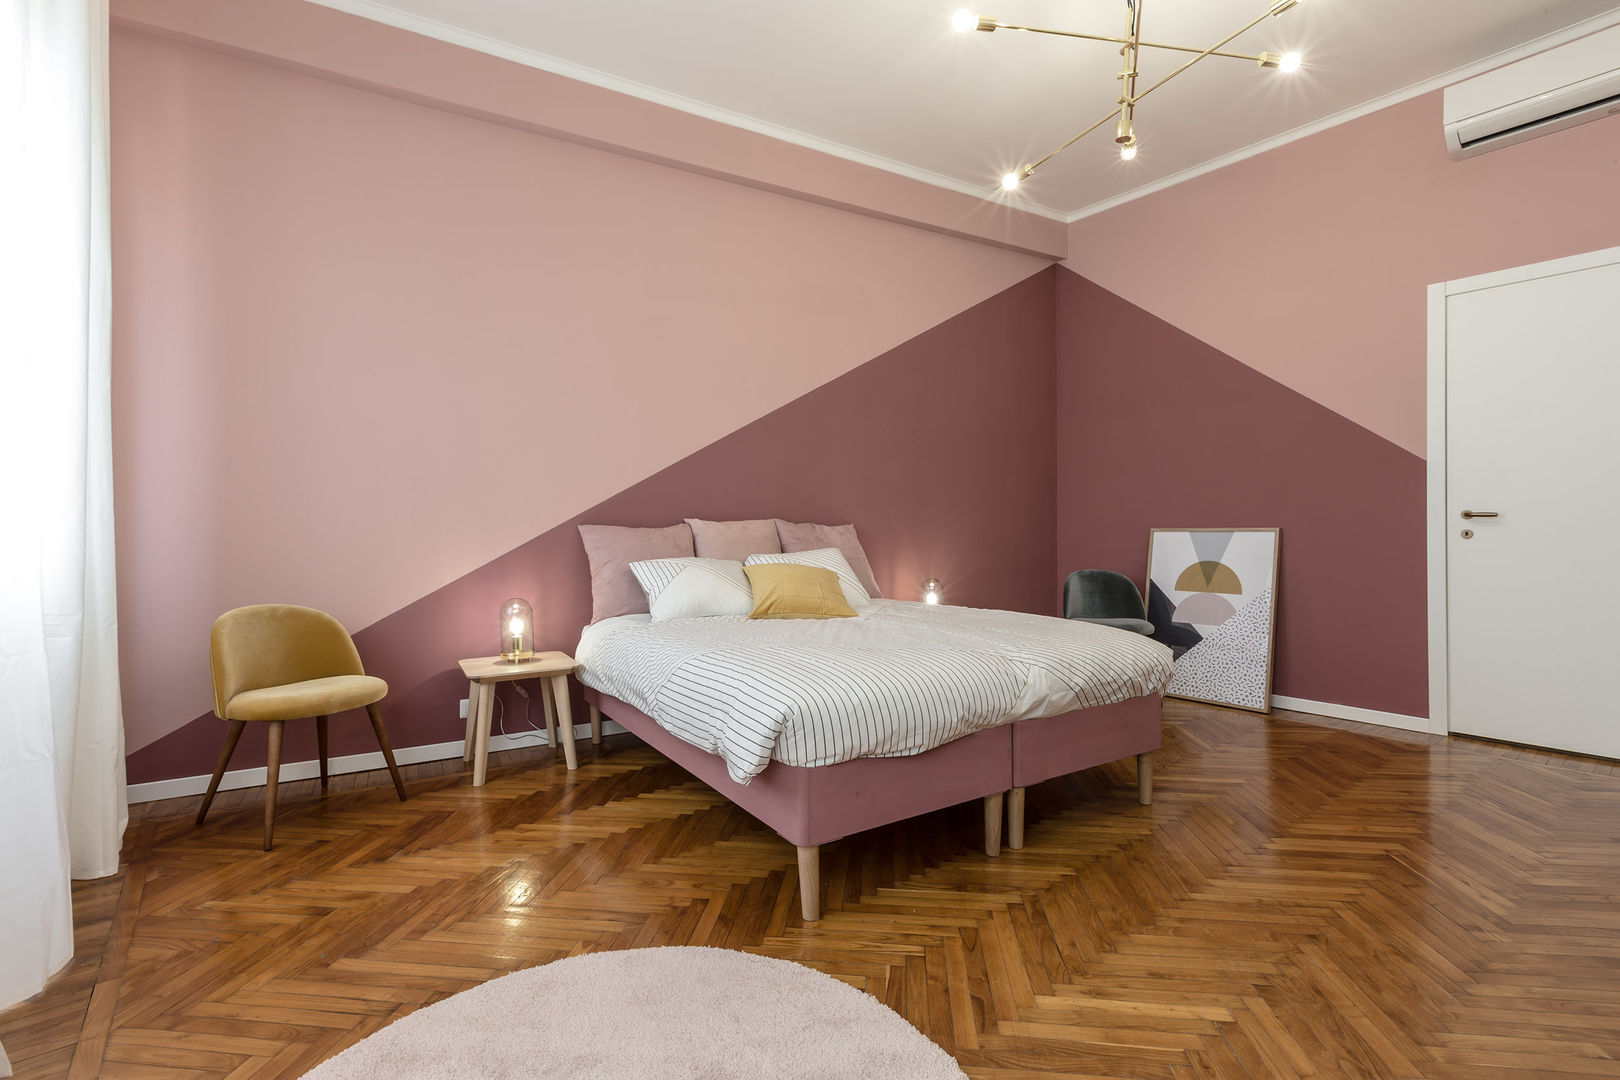 Camera matrimoniale Architrek Camera da letto moderna camera,parquet,rosa,colori delle pareti,letto,tappeto,lampada